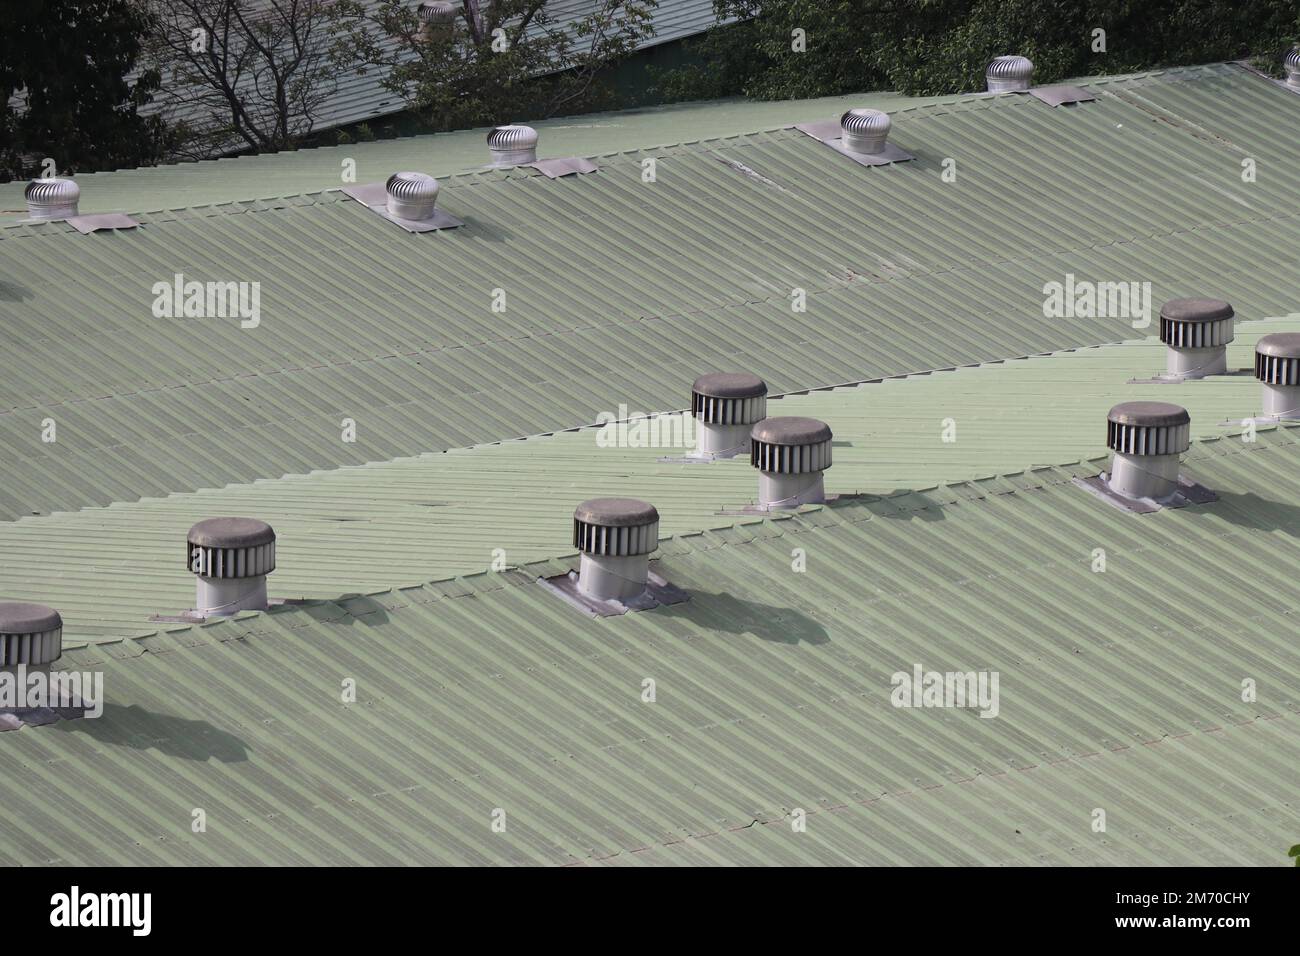 Ventilatoren, die nicht von Strom angetrieben werden, auf dem Dach einer kleinen Industrie. Ventilatoren auf dem Dach, die sich drehen und Wind ins Gebäude bringen Stockfoto